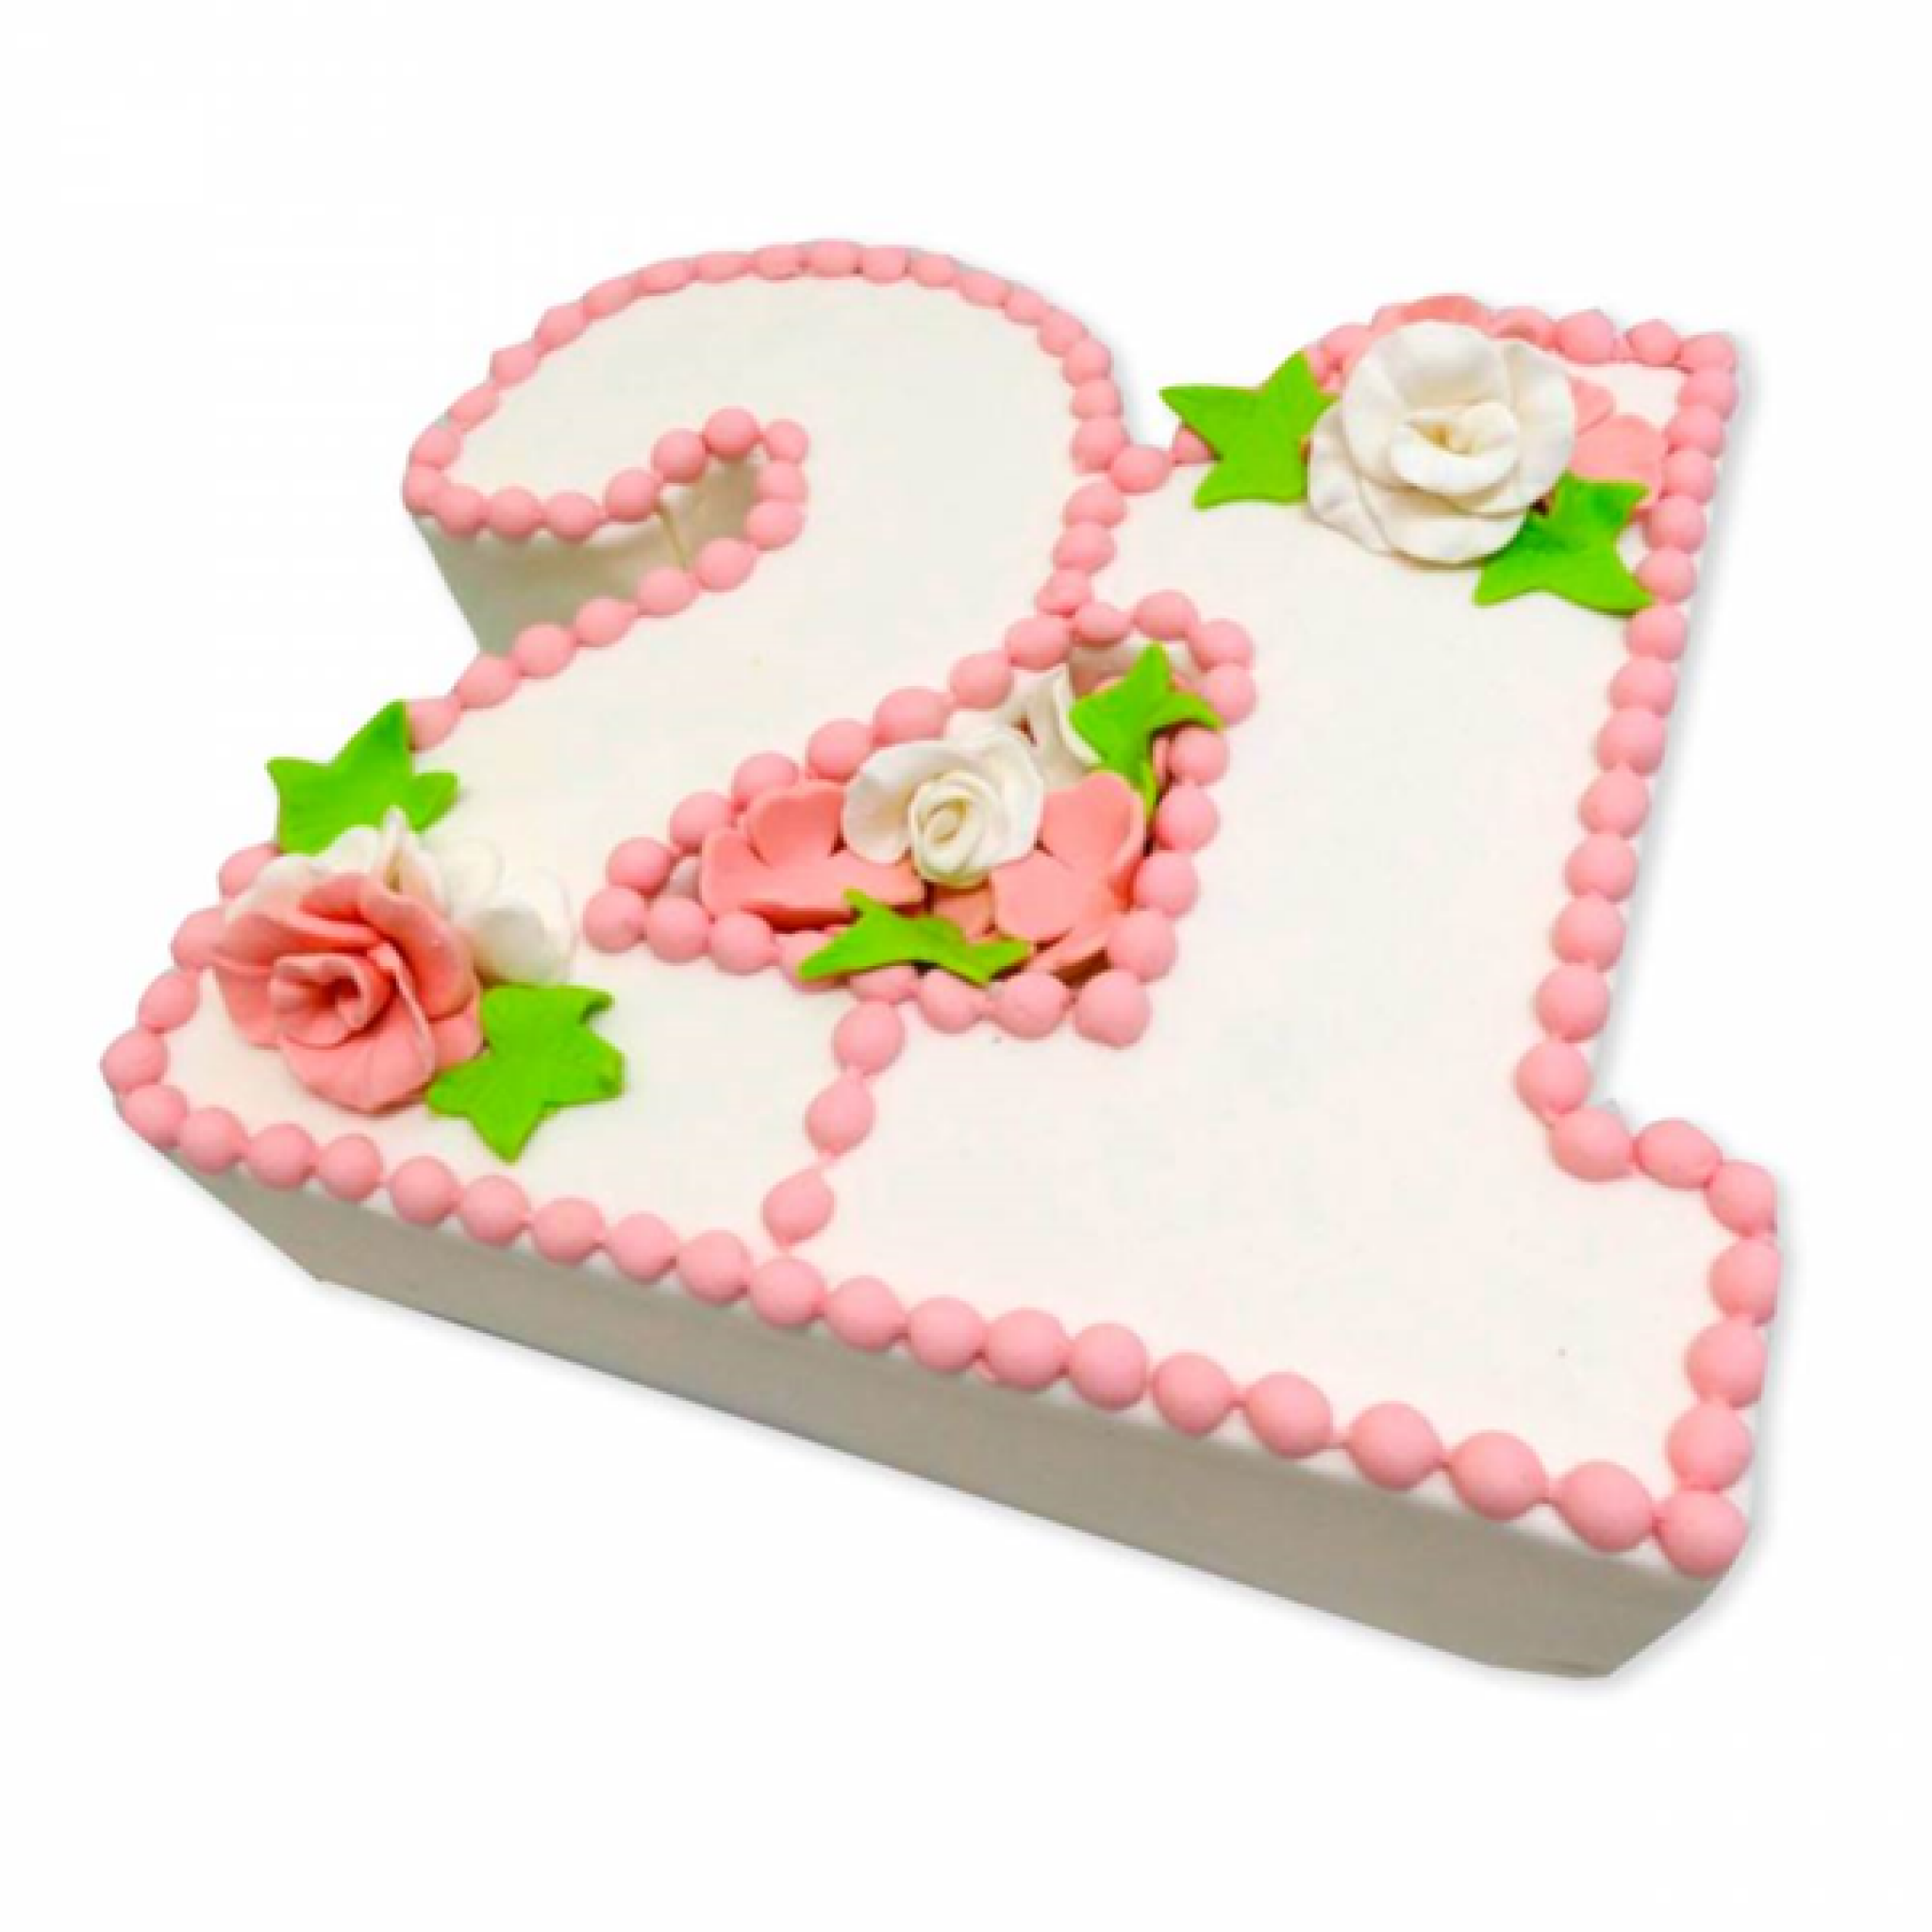 Поздравление с годовщиной 21 год. 21 Год свадьбы. Торт на 21 годовщину свадьбы. С 21 летием совместной жизни. С годовщиной 21 год совместной жизни.